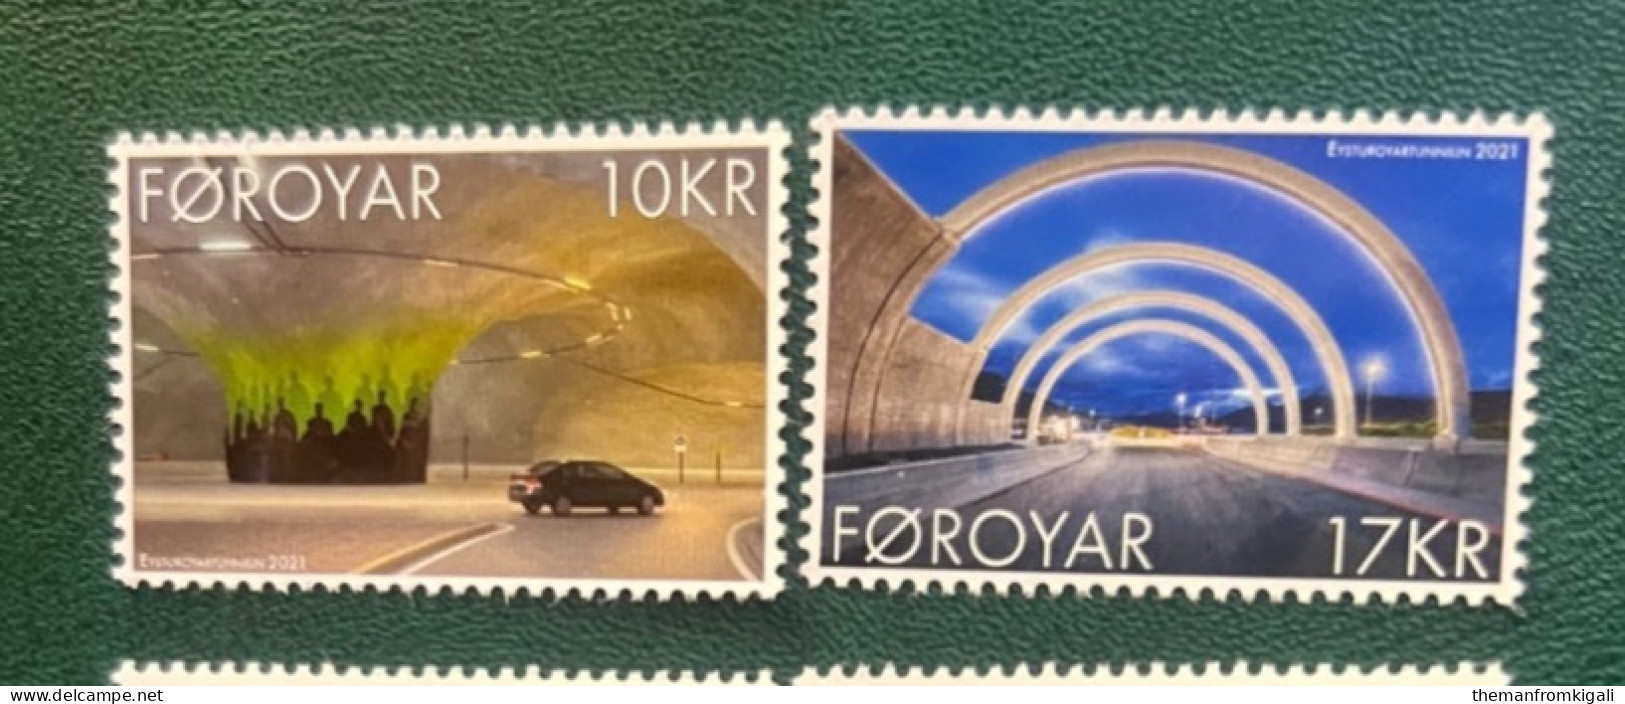 Faroe Islands 2021 Eysturoy Tunnel - Faroe Islands